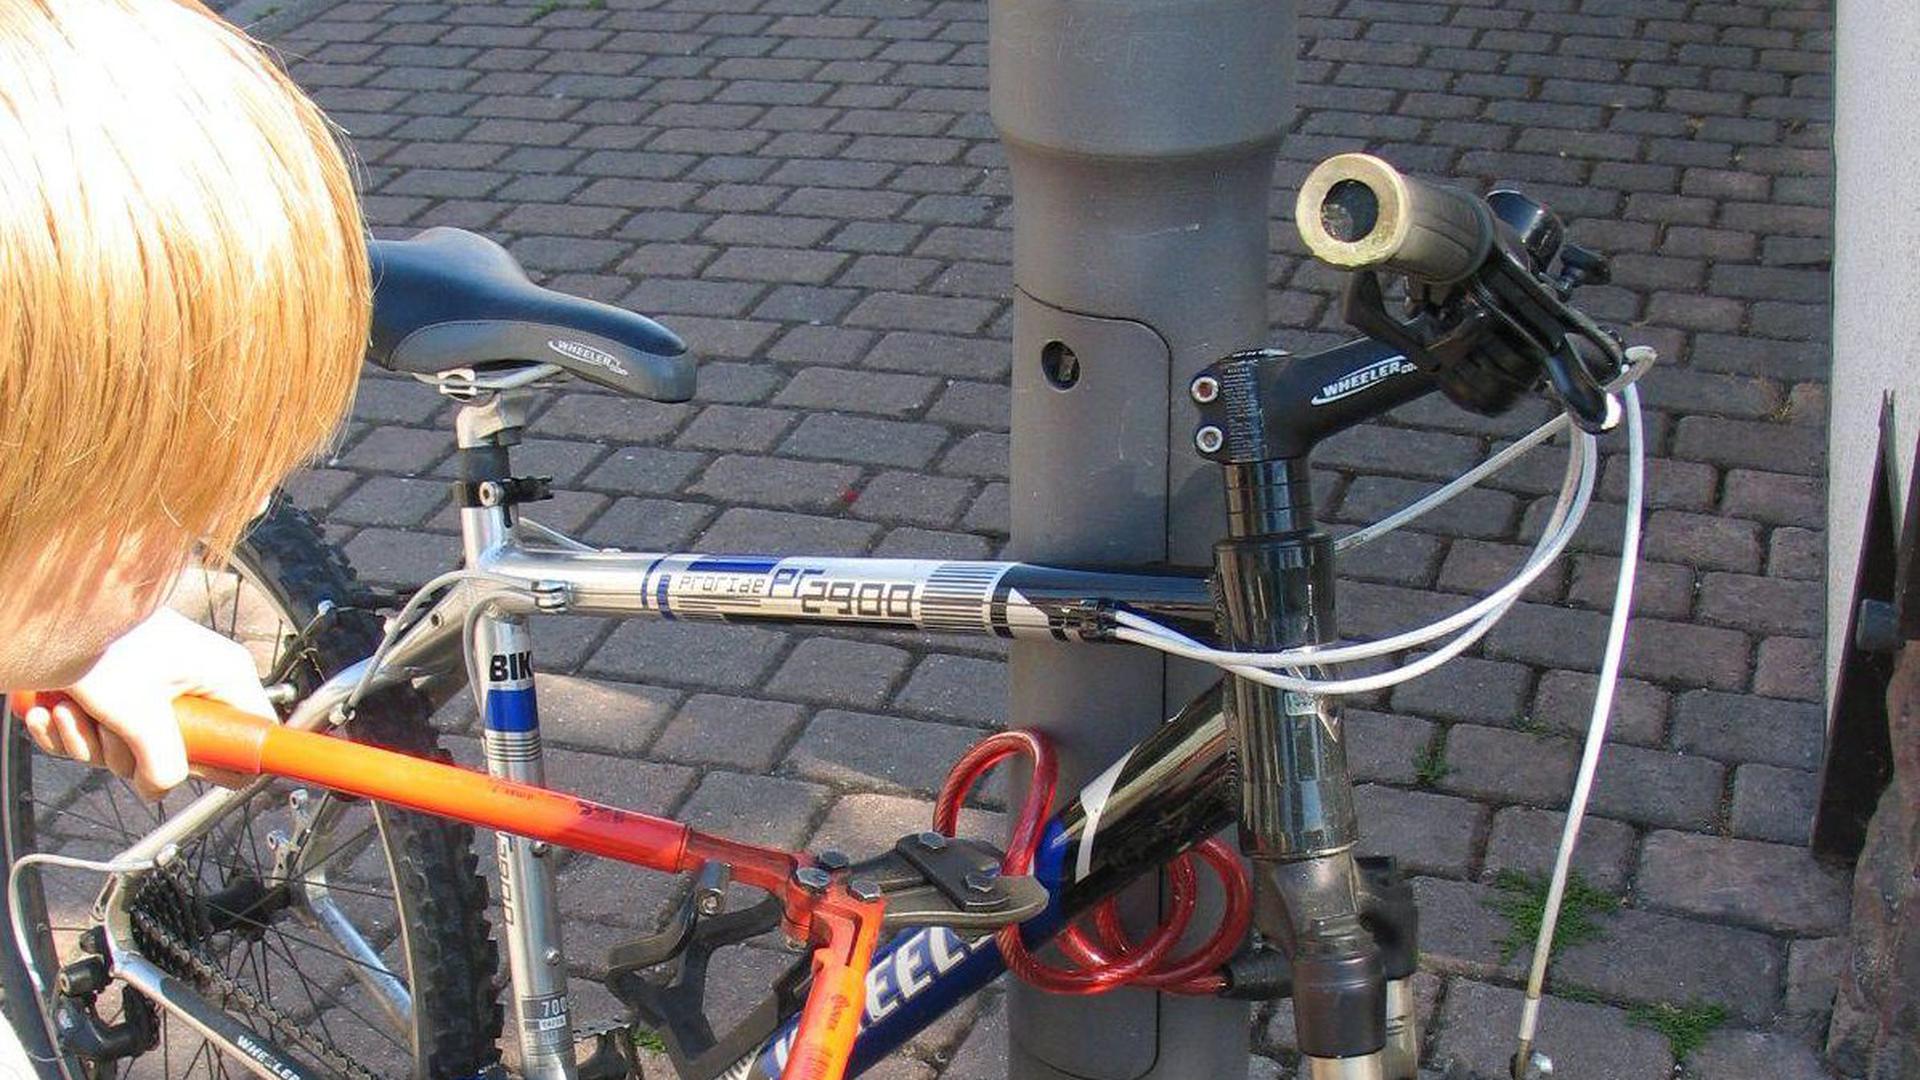 Ob verschlossen oder nicht: Fahrräder sind leichte Beute für ausgebuffte Diebe. Trotz begrenzter Ermittlungschancen bittet die Polizei aber darum, Fahrraddiebstähle immer anzuzeigen.